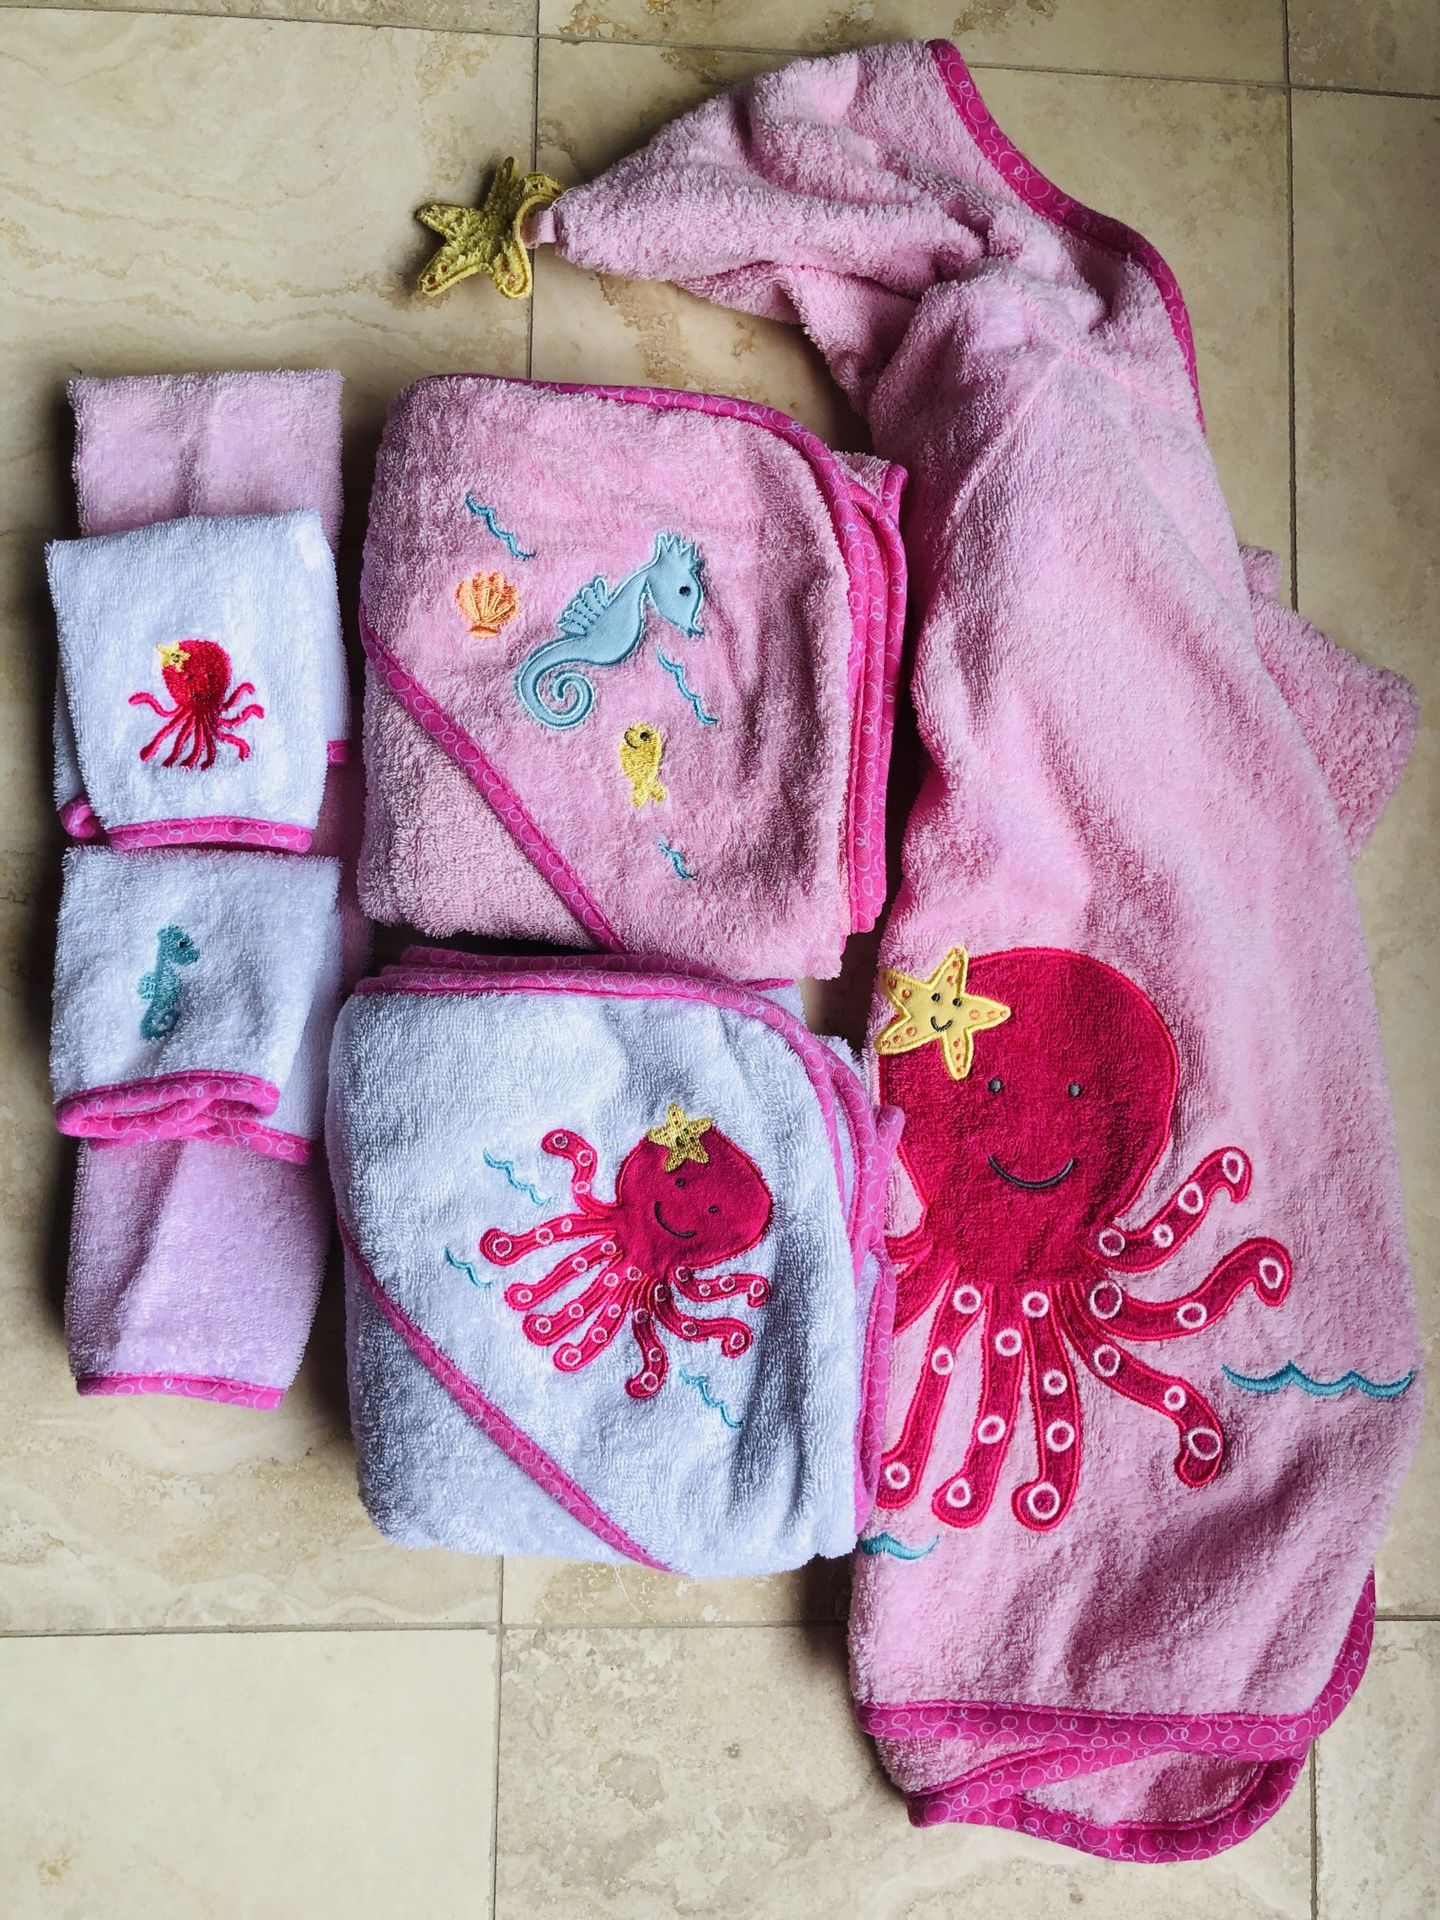 Baby Towels, wash cloths, & bath robe